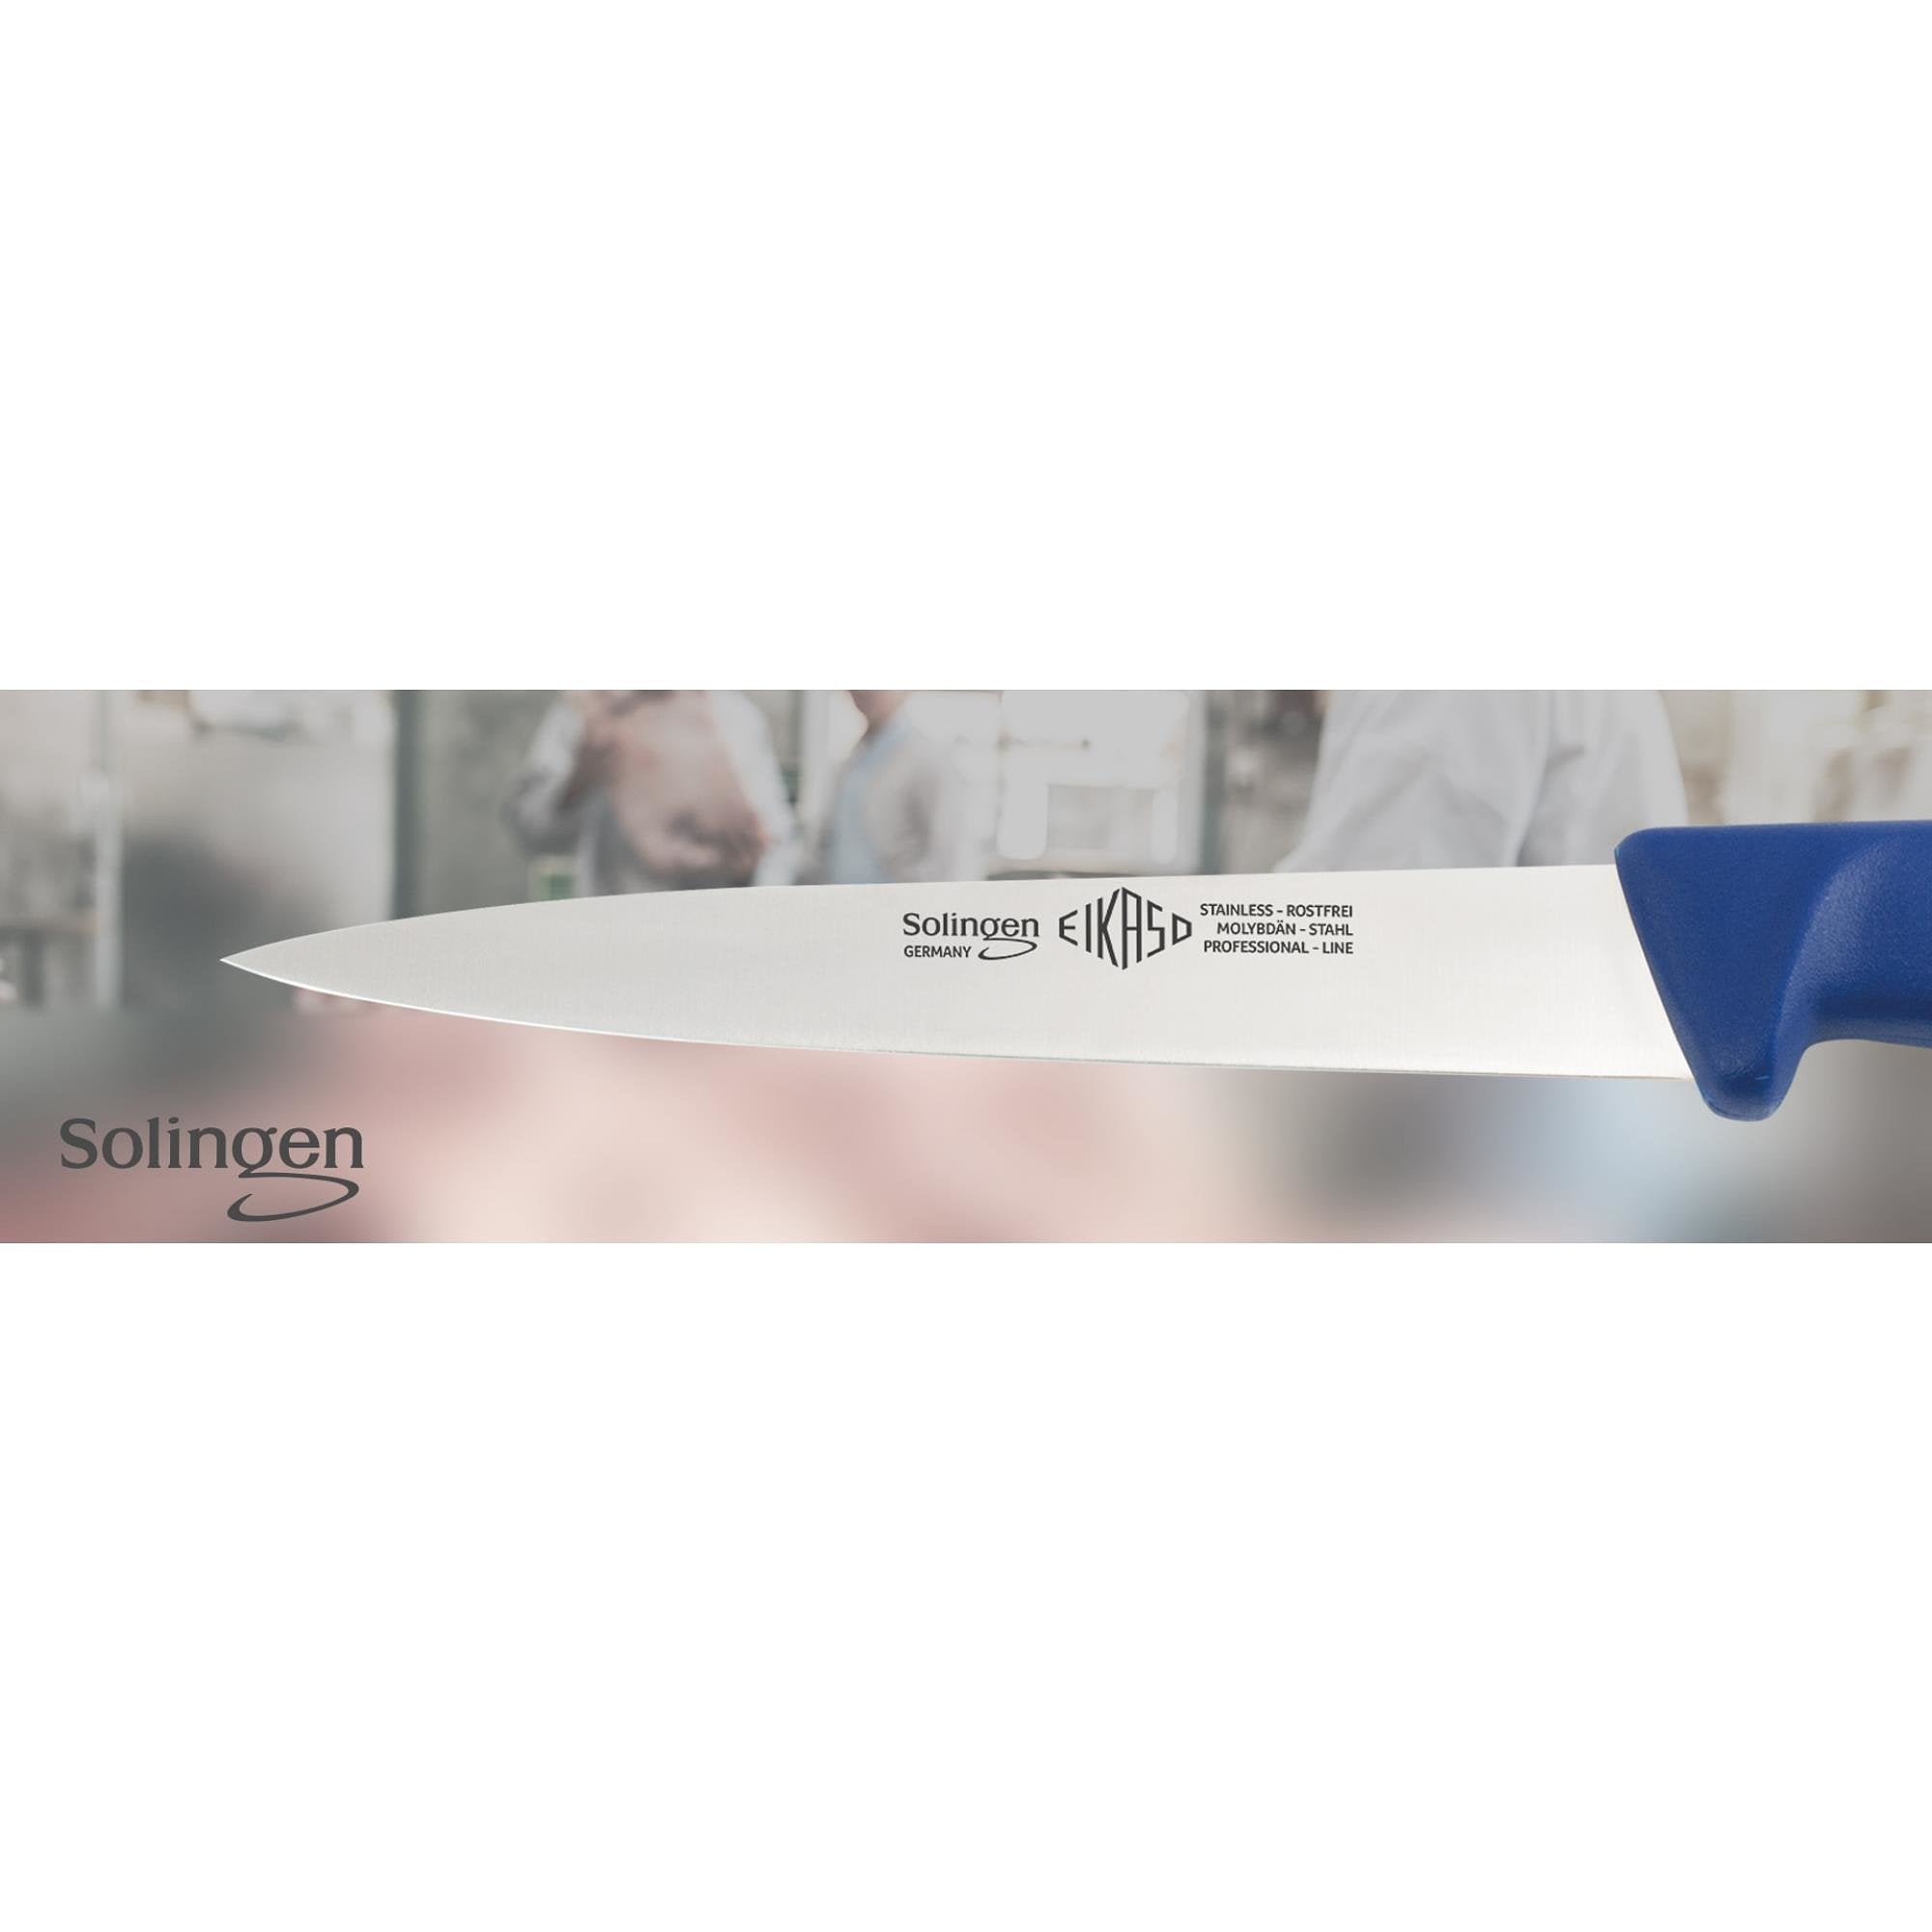 Eikaso Solingen Fileermes 18 cm - Middenspits en Flexibel - Ergonomisch Blauw Handvat